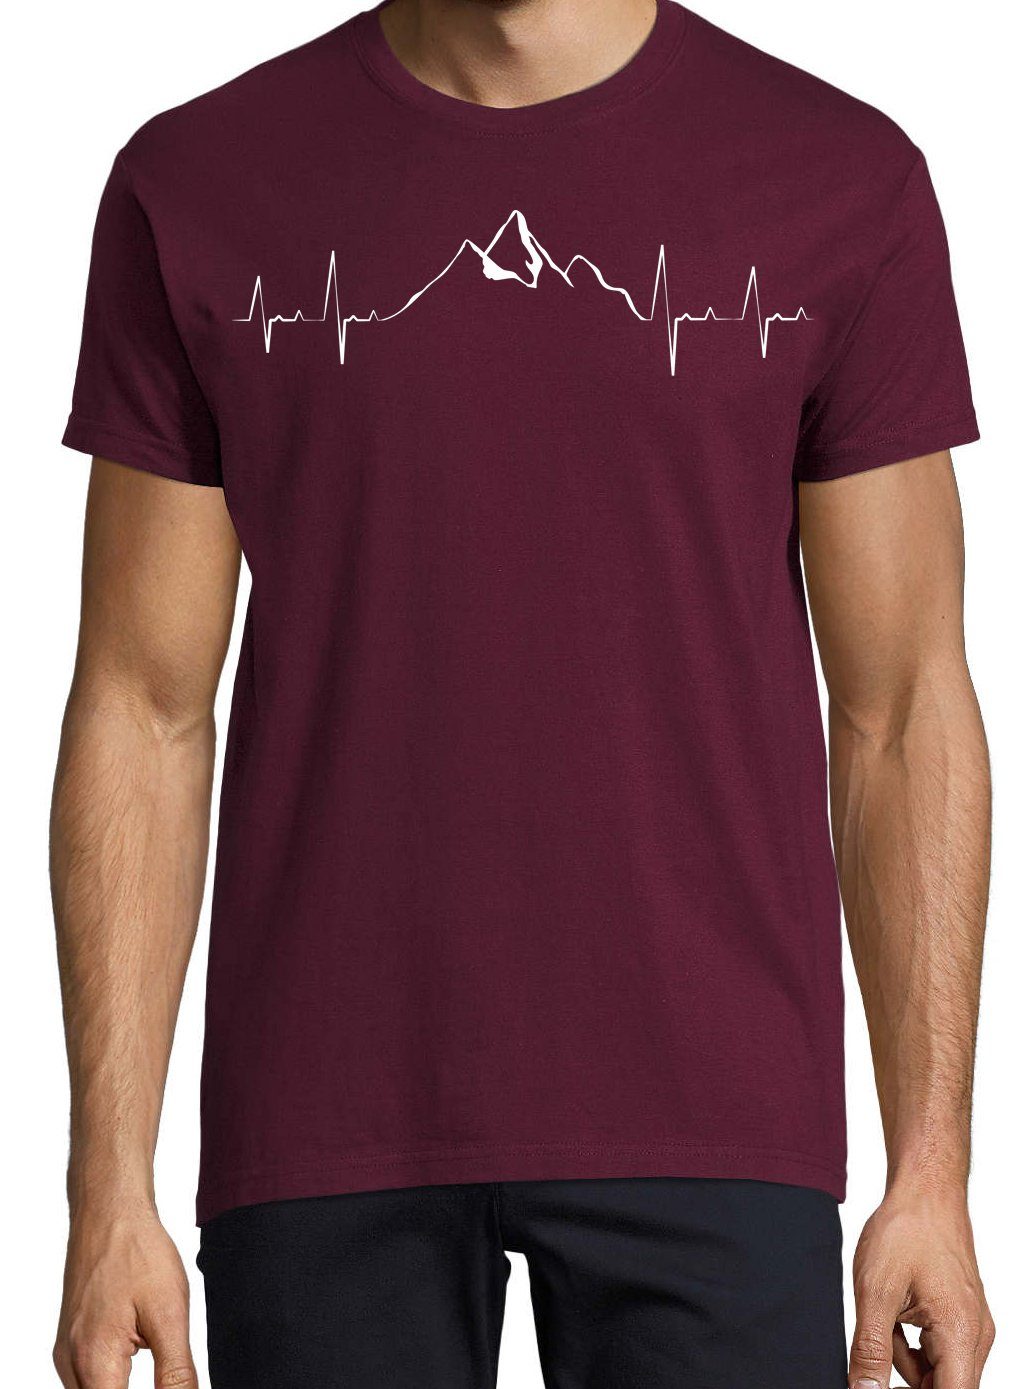 Burgund Youth Shirt Designz T-Shirt mit Frontprint Mountain Herren trendigem Heartbeat